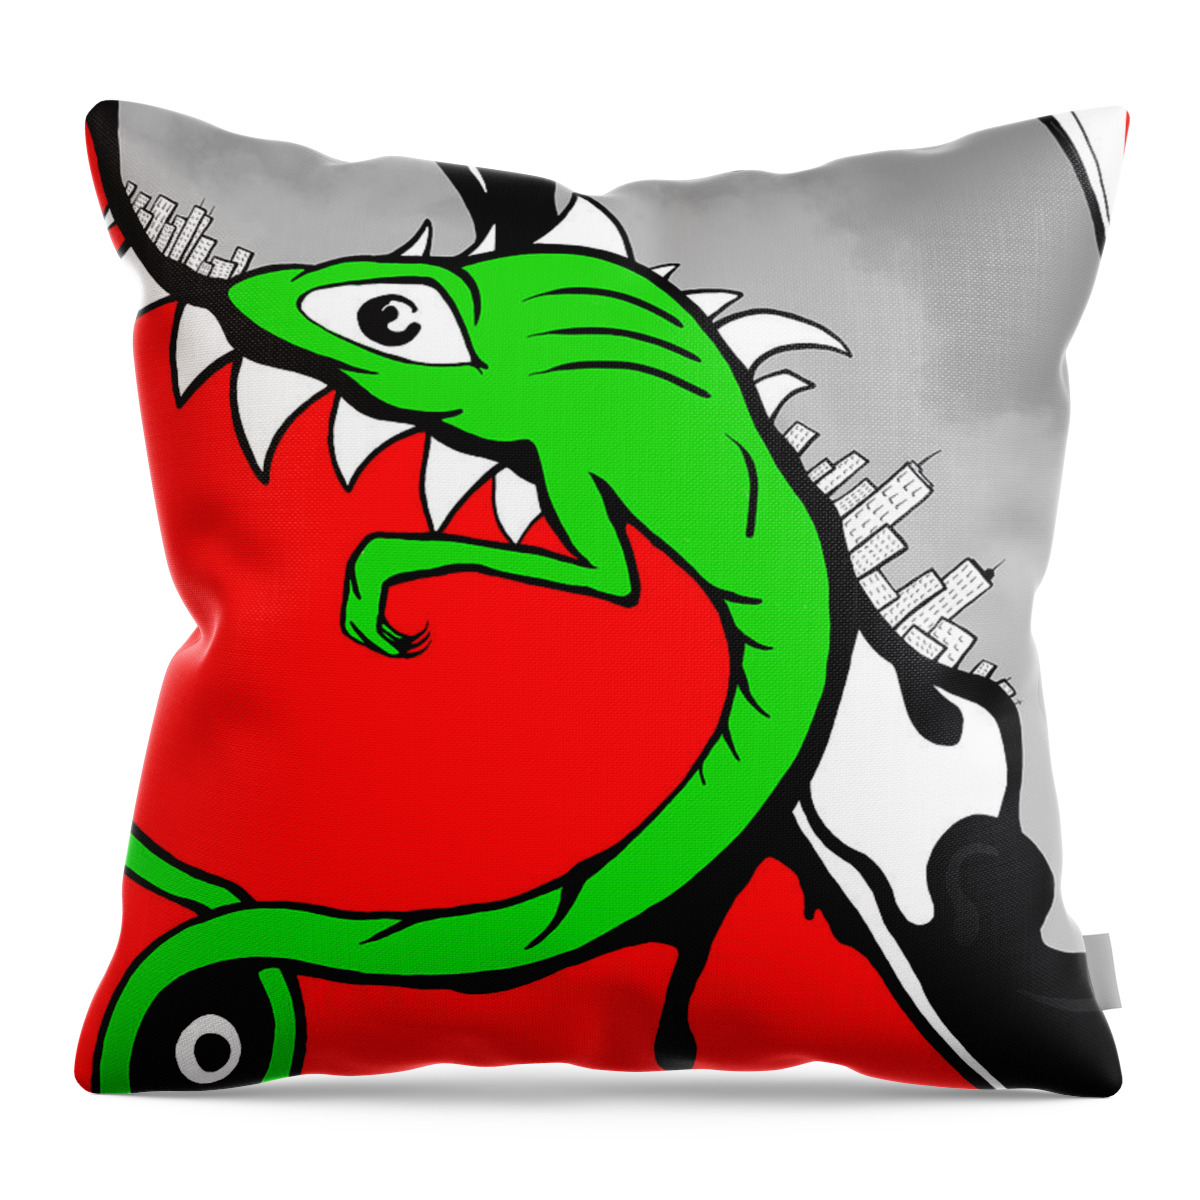 Lizard Throw Pillow featuring the digital art Change by Craig Tilley